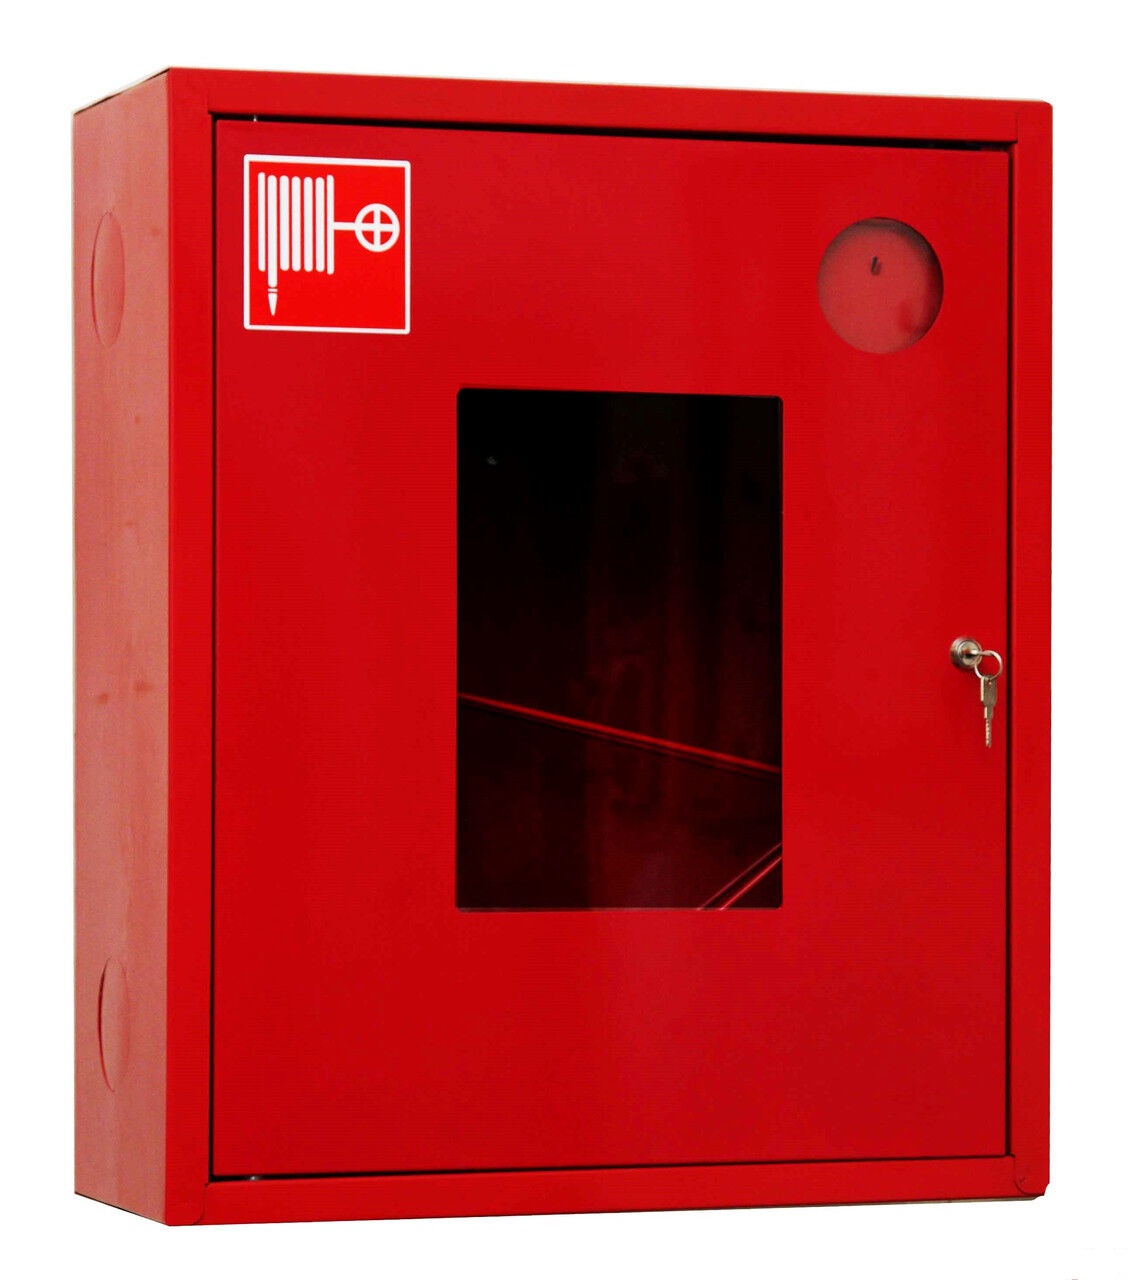 Тест пожарные краны. Шкаф пожарный ШПК-310н. Шкаф пожарный ШПК-310 НОК. Шкаф пожарный ШПК-310 НОБ. Шкаф пожарный ШПК-01 (ШПК-310) НОК (навесной, открытый, красный).